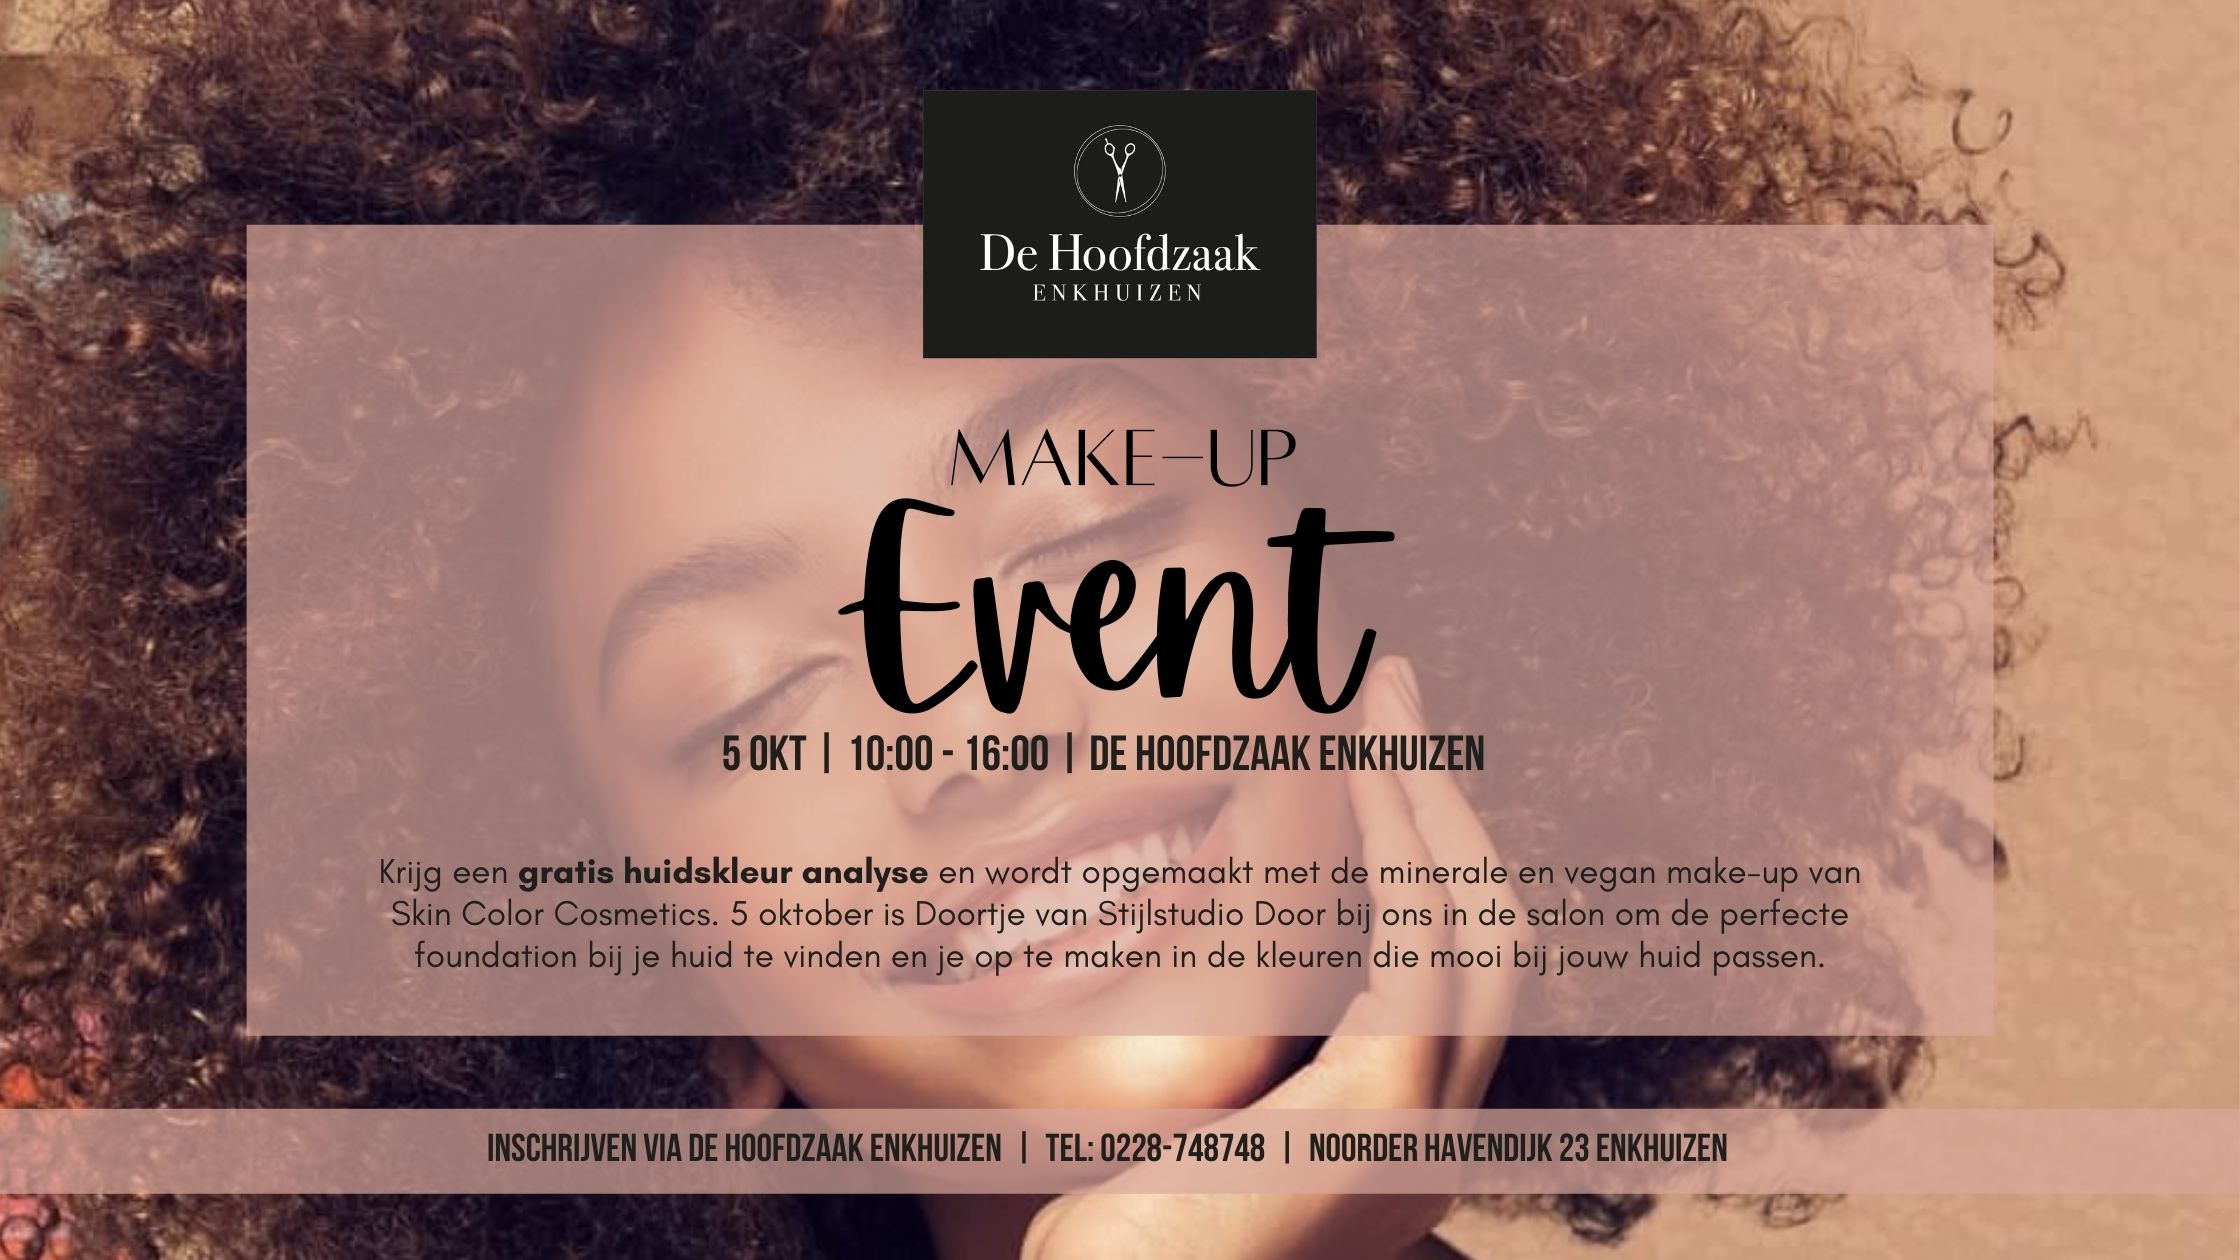 You are invited! | Make-up Event 5 Okt 2021 | Stijlstudio Door x De Hoofdzaak Enkhuizen